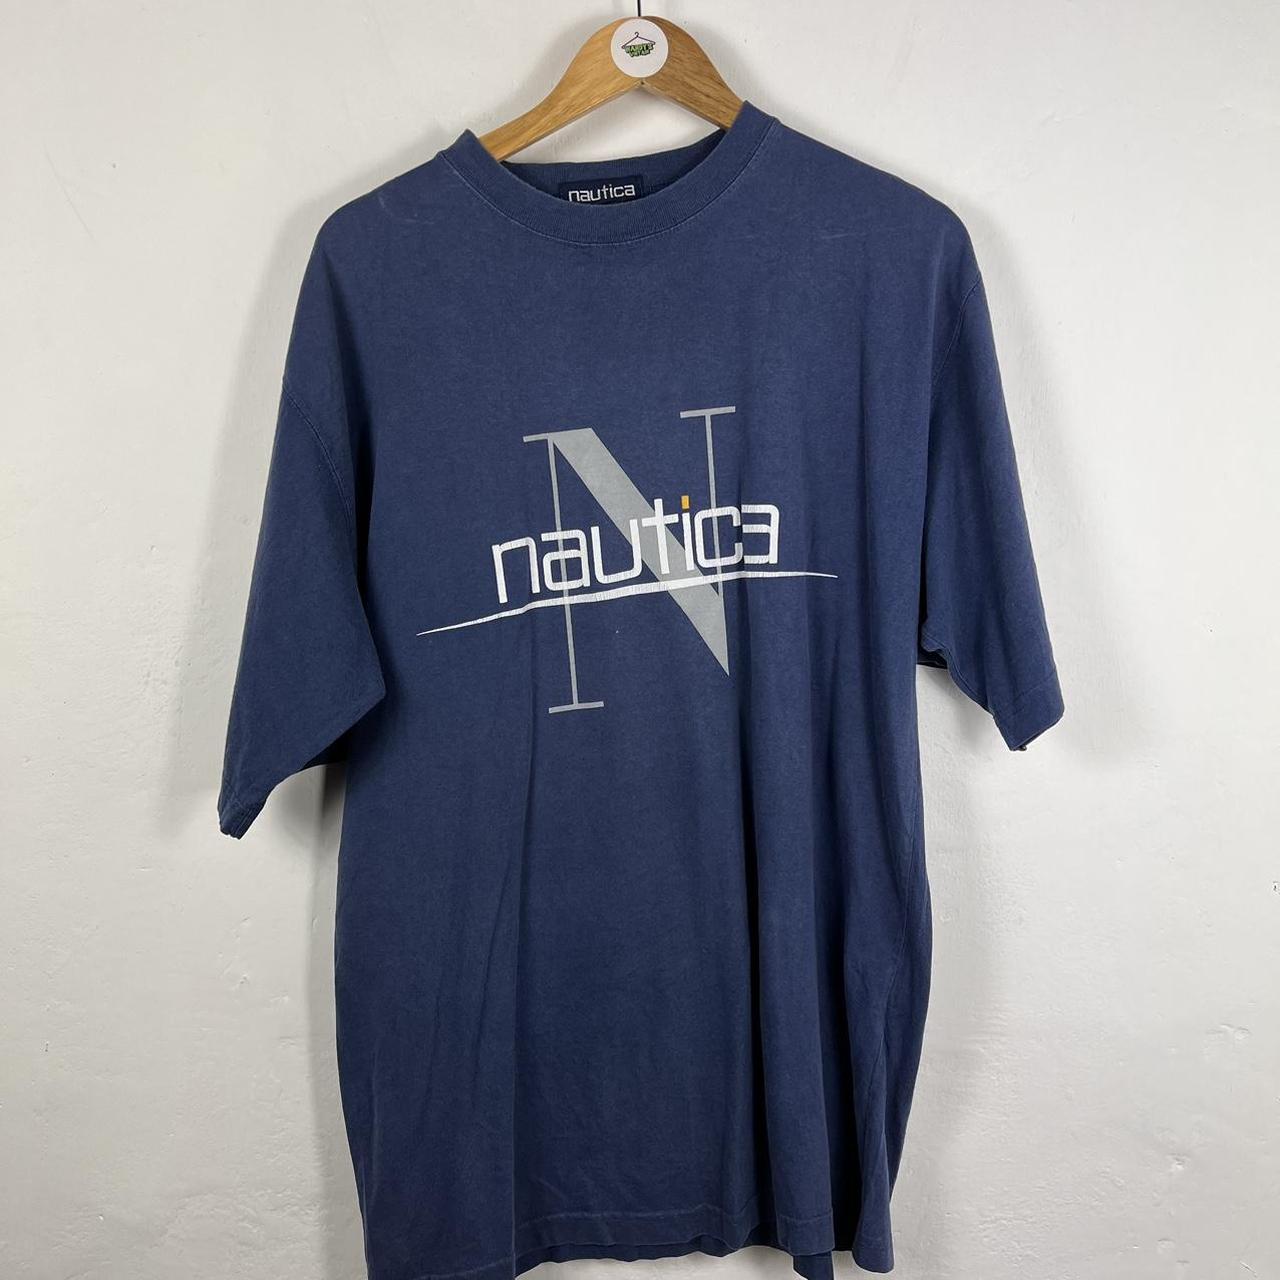 Nautica t shirt XL